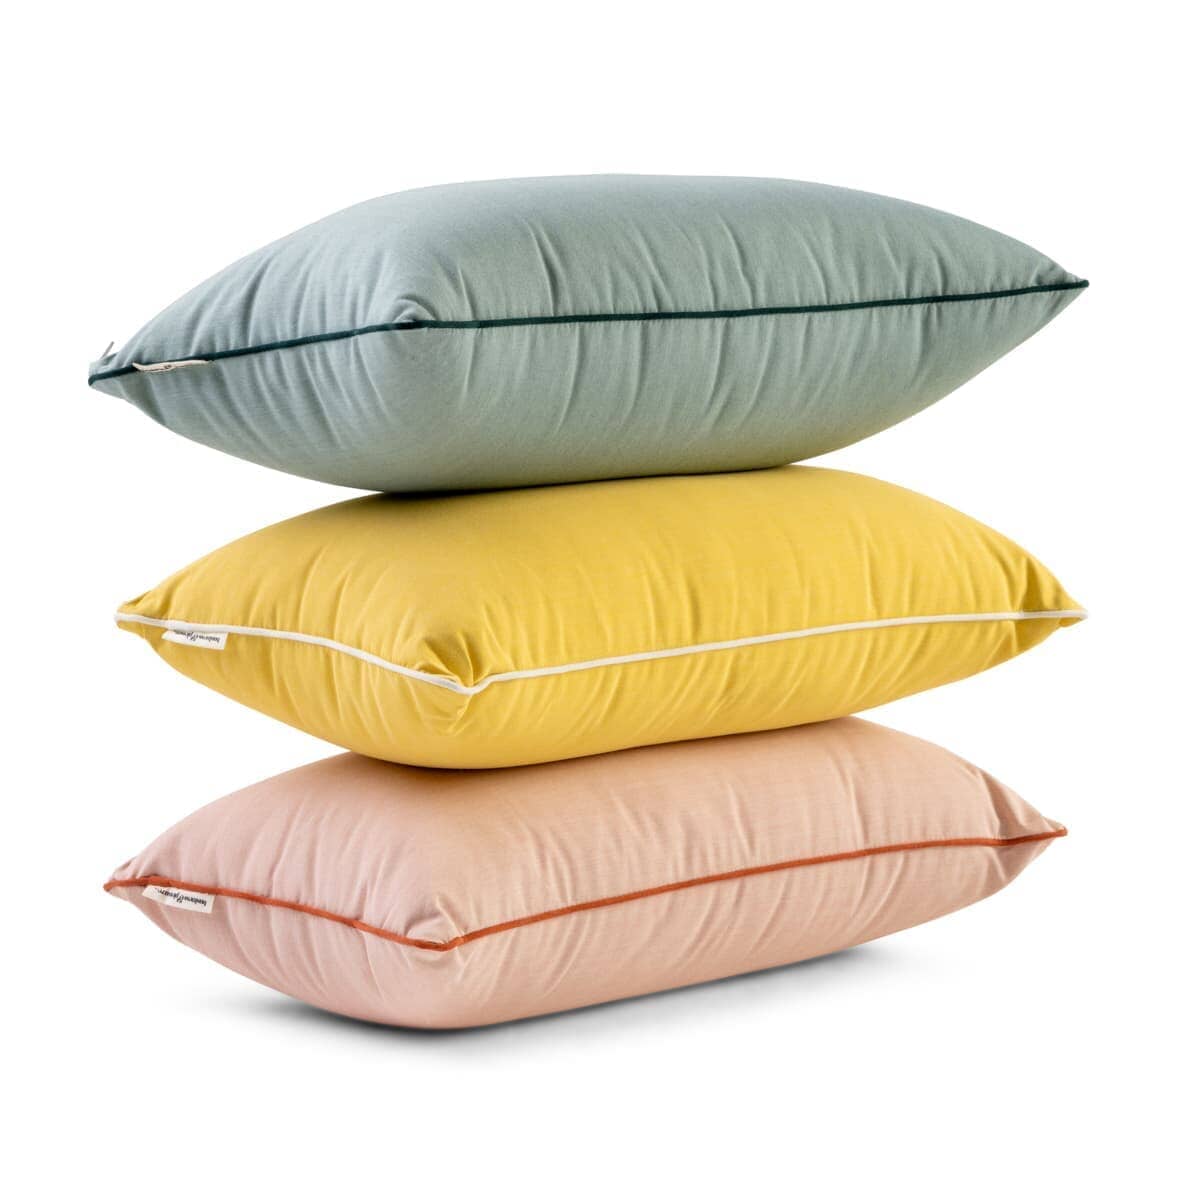 Studio image of throw pillows